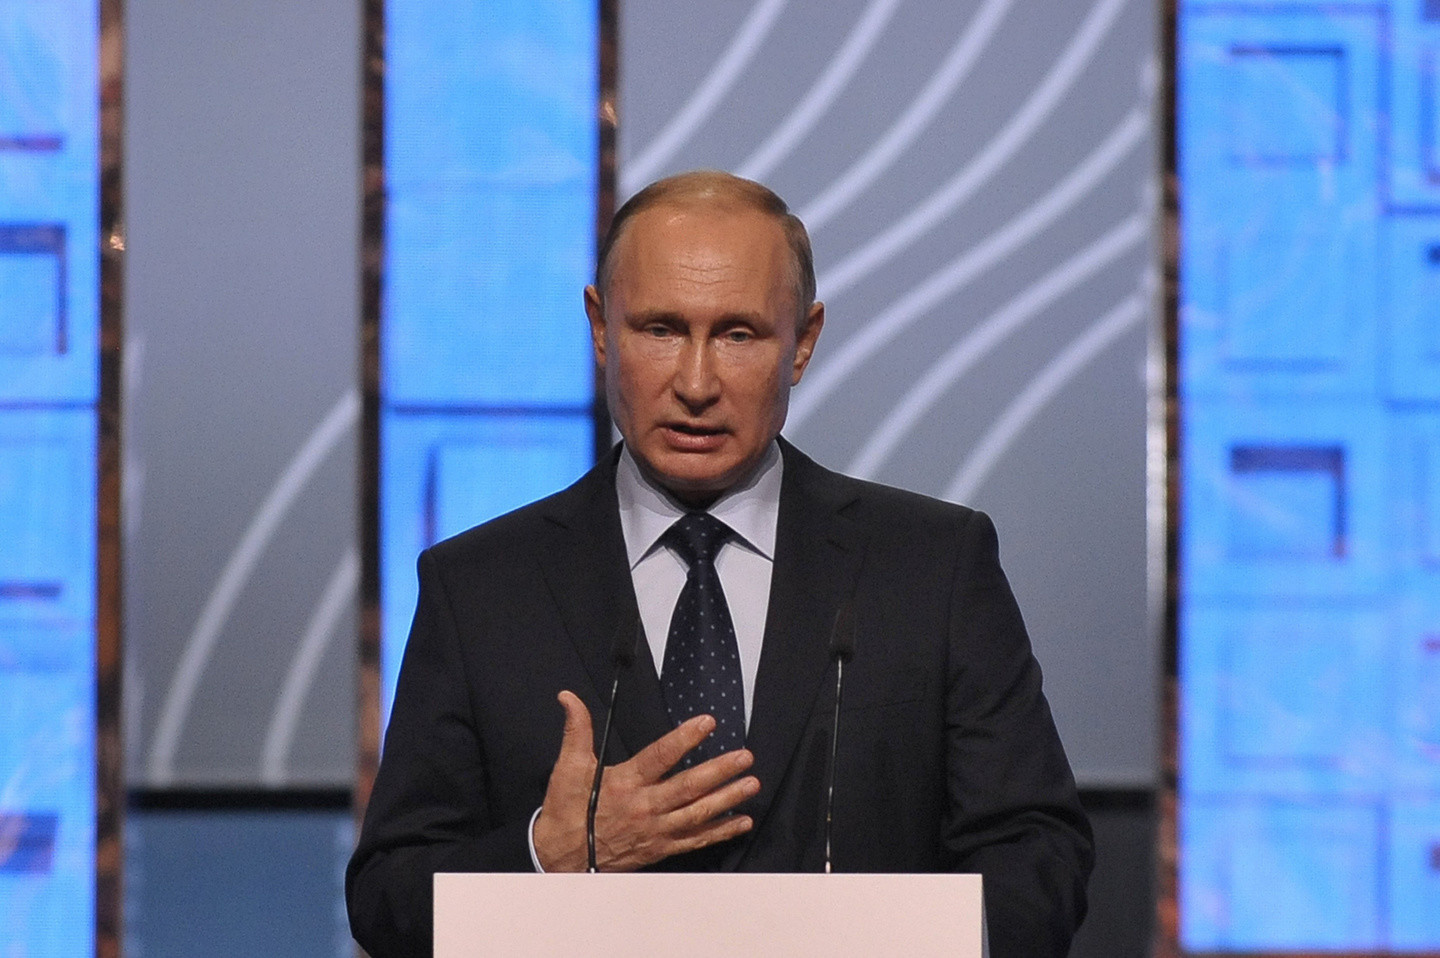 Владимир Путин. Фото: © Агентство городских новостей "Москва"/Авилов Александр
